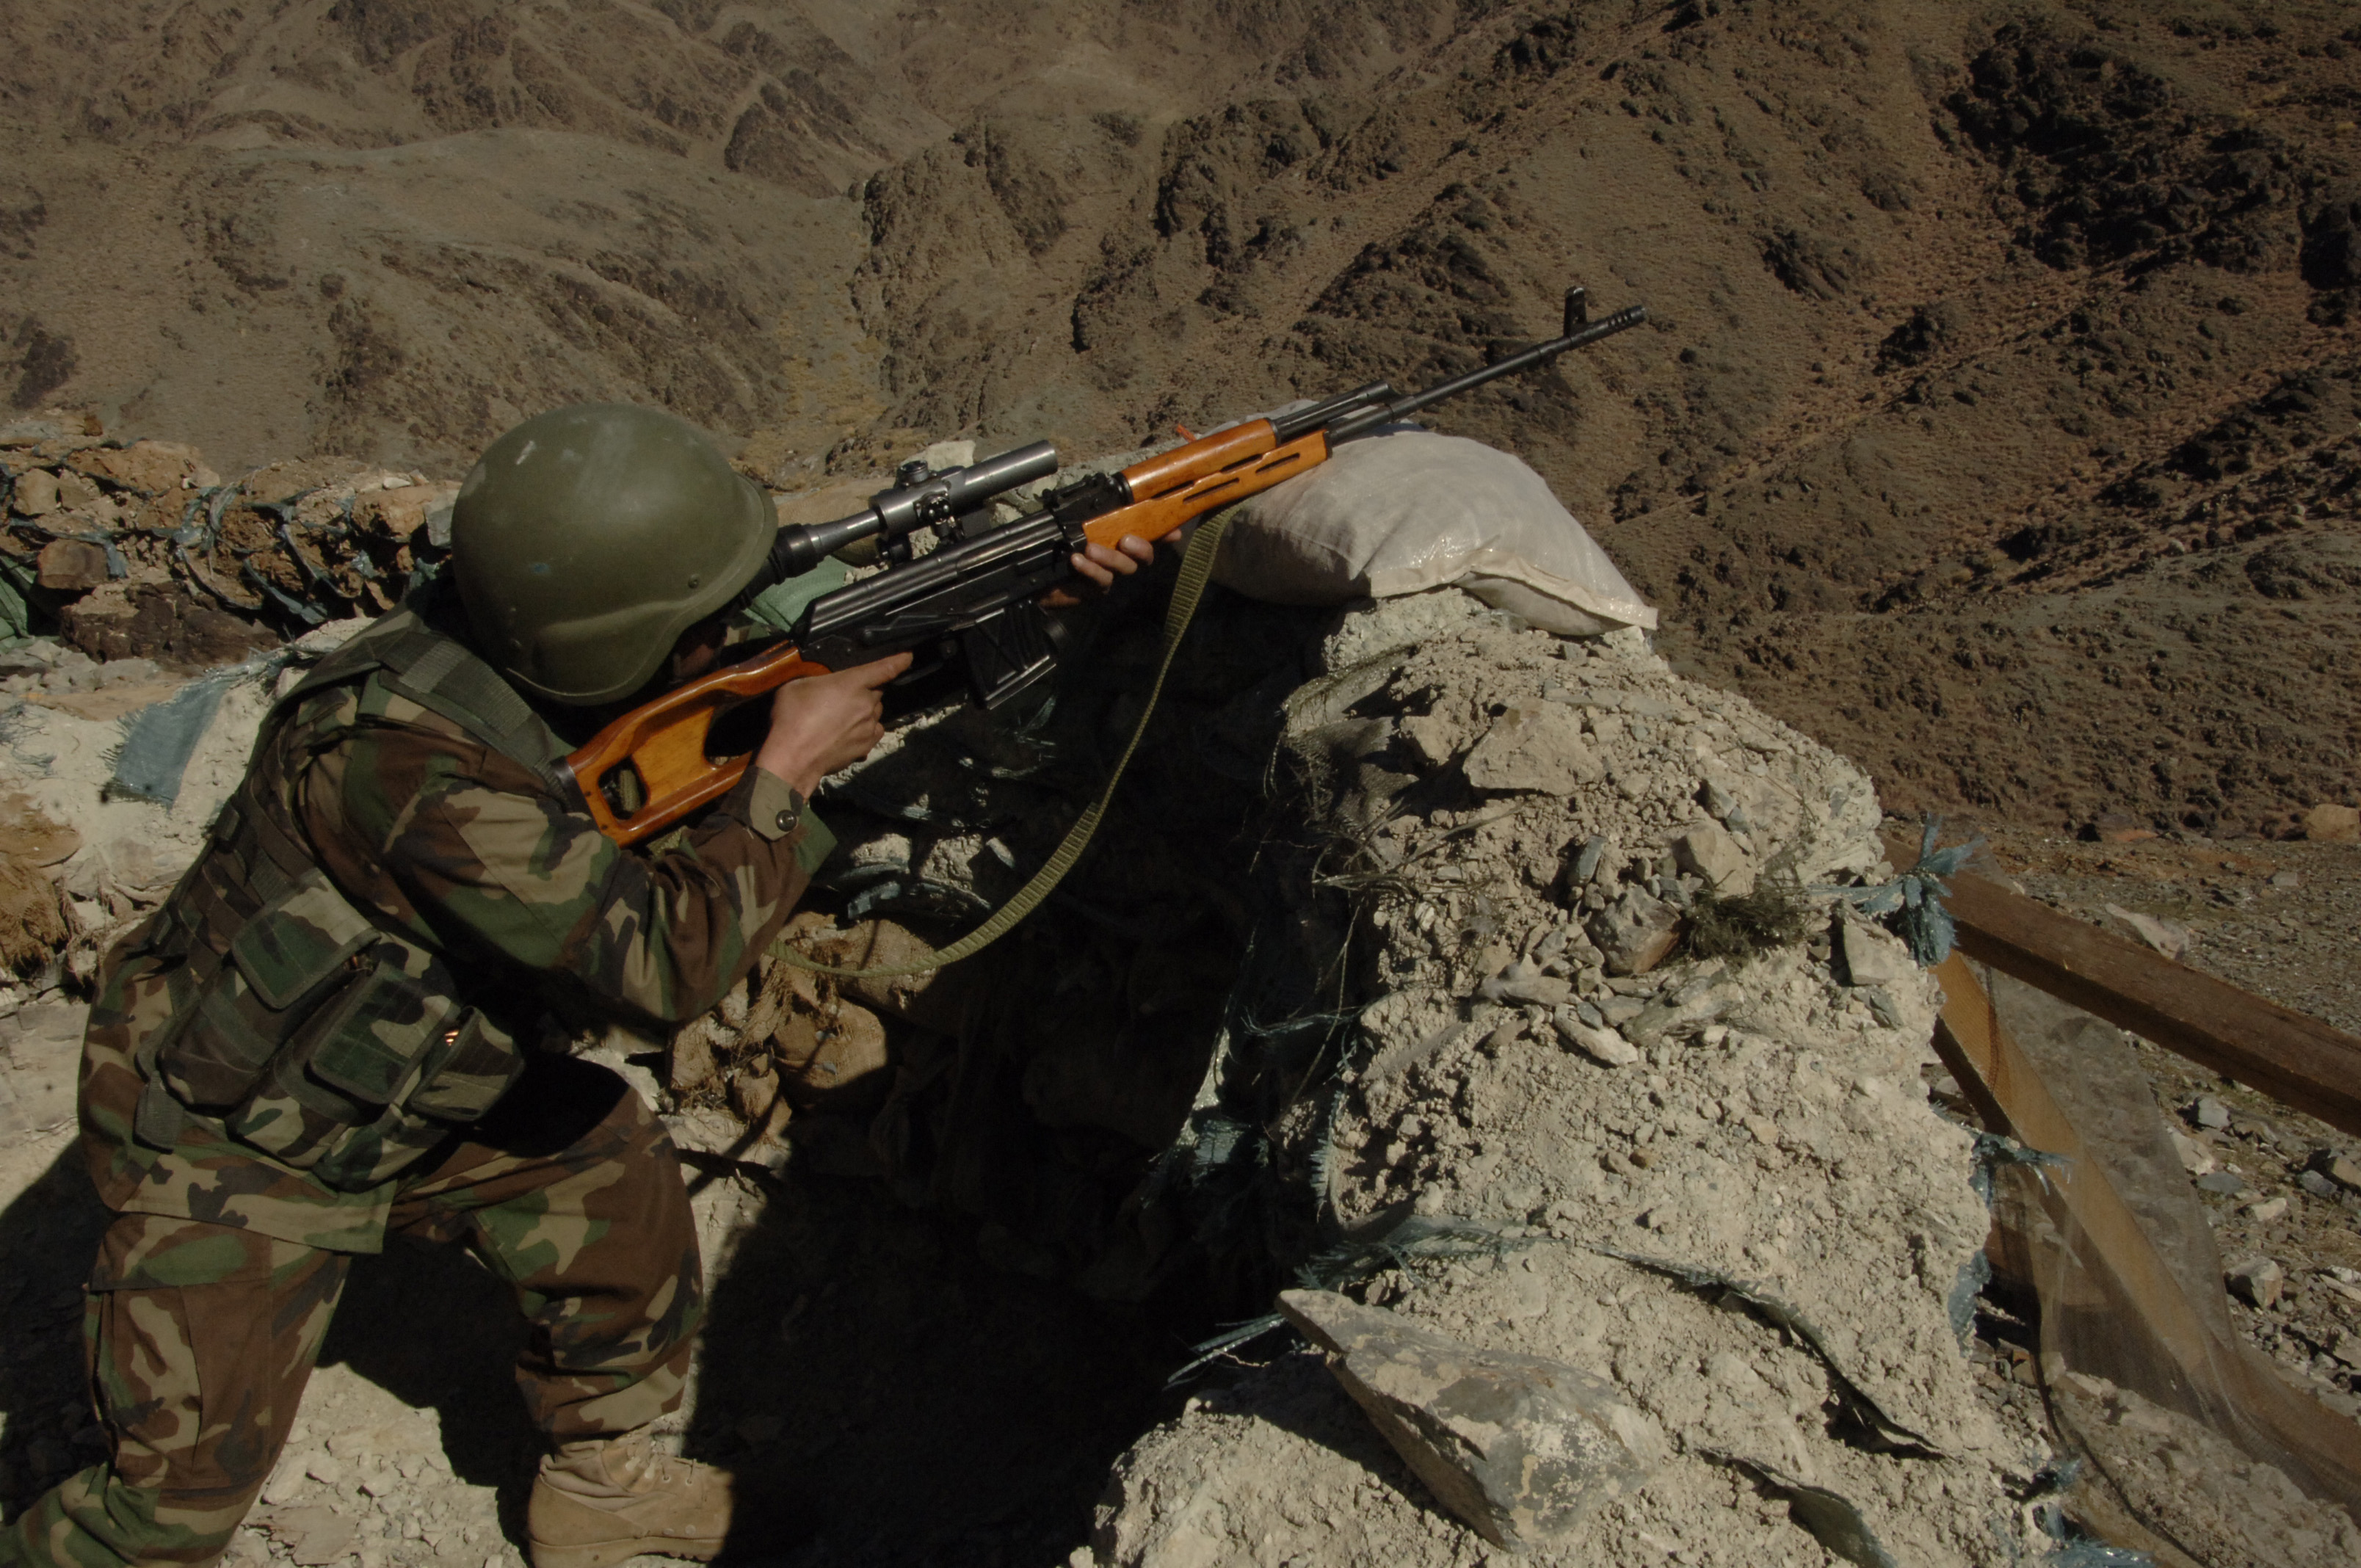 7 戦場風景画像 枚 スナイパーライフル Psl タブク ツァスタバ M76狙撃銃 戦争 兵士 写真 壁紙 風景と少女による可能世界